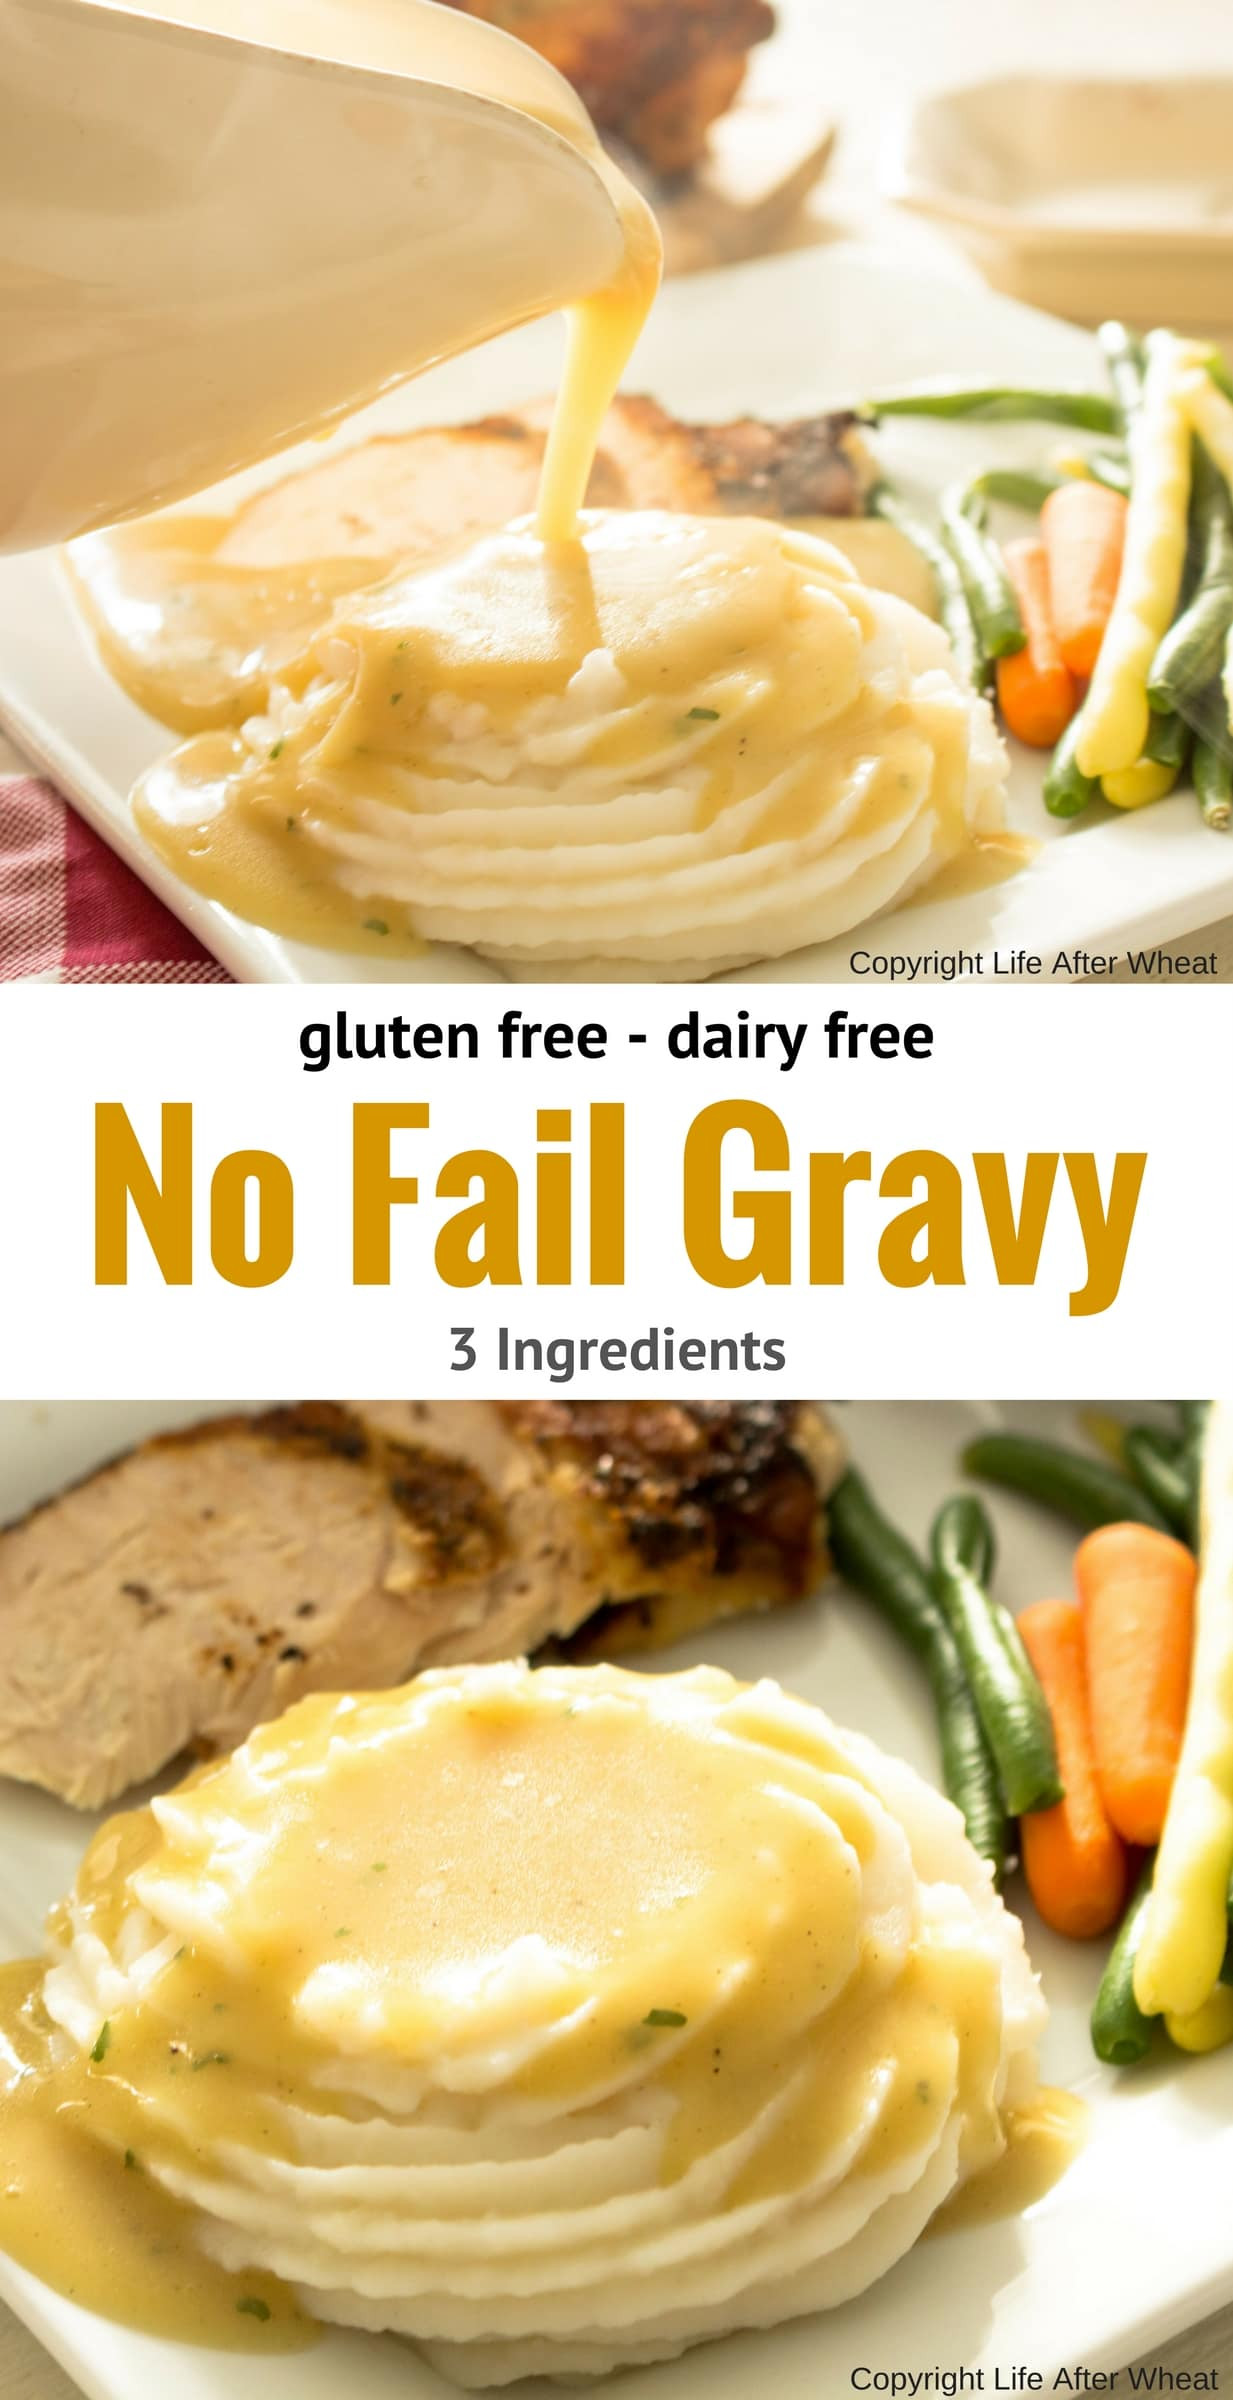 Gluten Free Dairy Free Gravy
 Gluten Free Gravy Recipe 3 ingre nts & Dairy Free